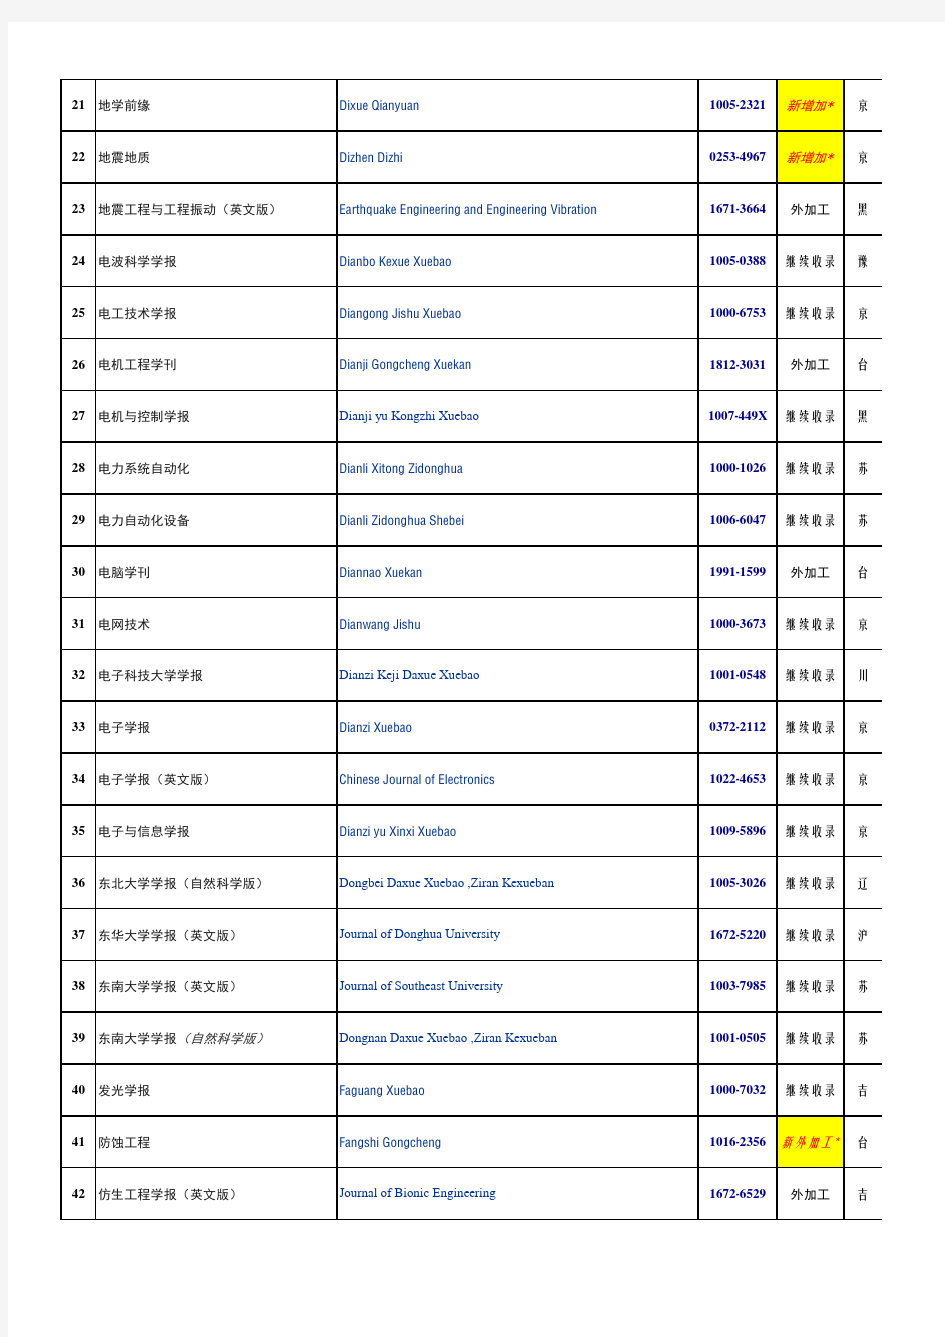 2013年EI收录中国期刊名单(238种,包括台湾及香港,另包括新增加的)